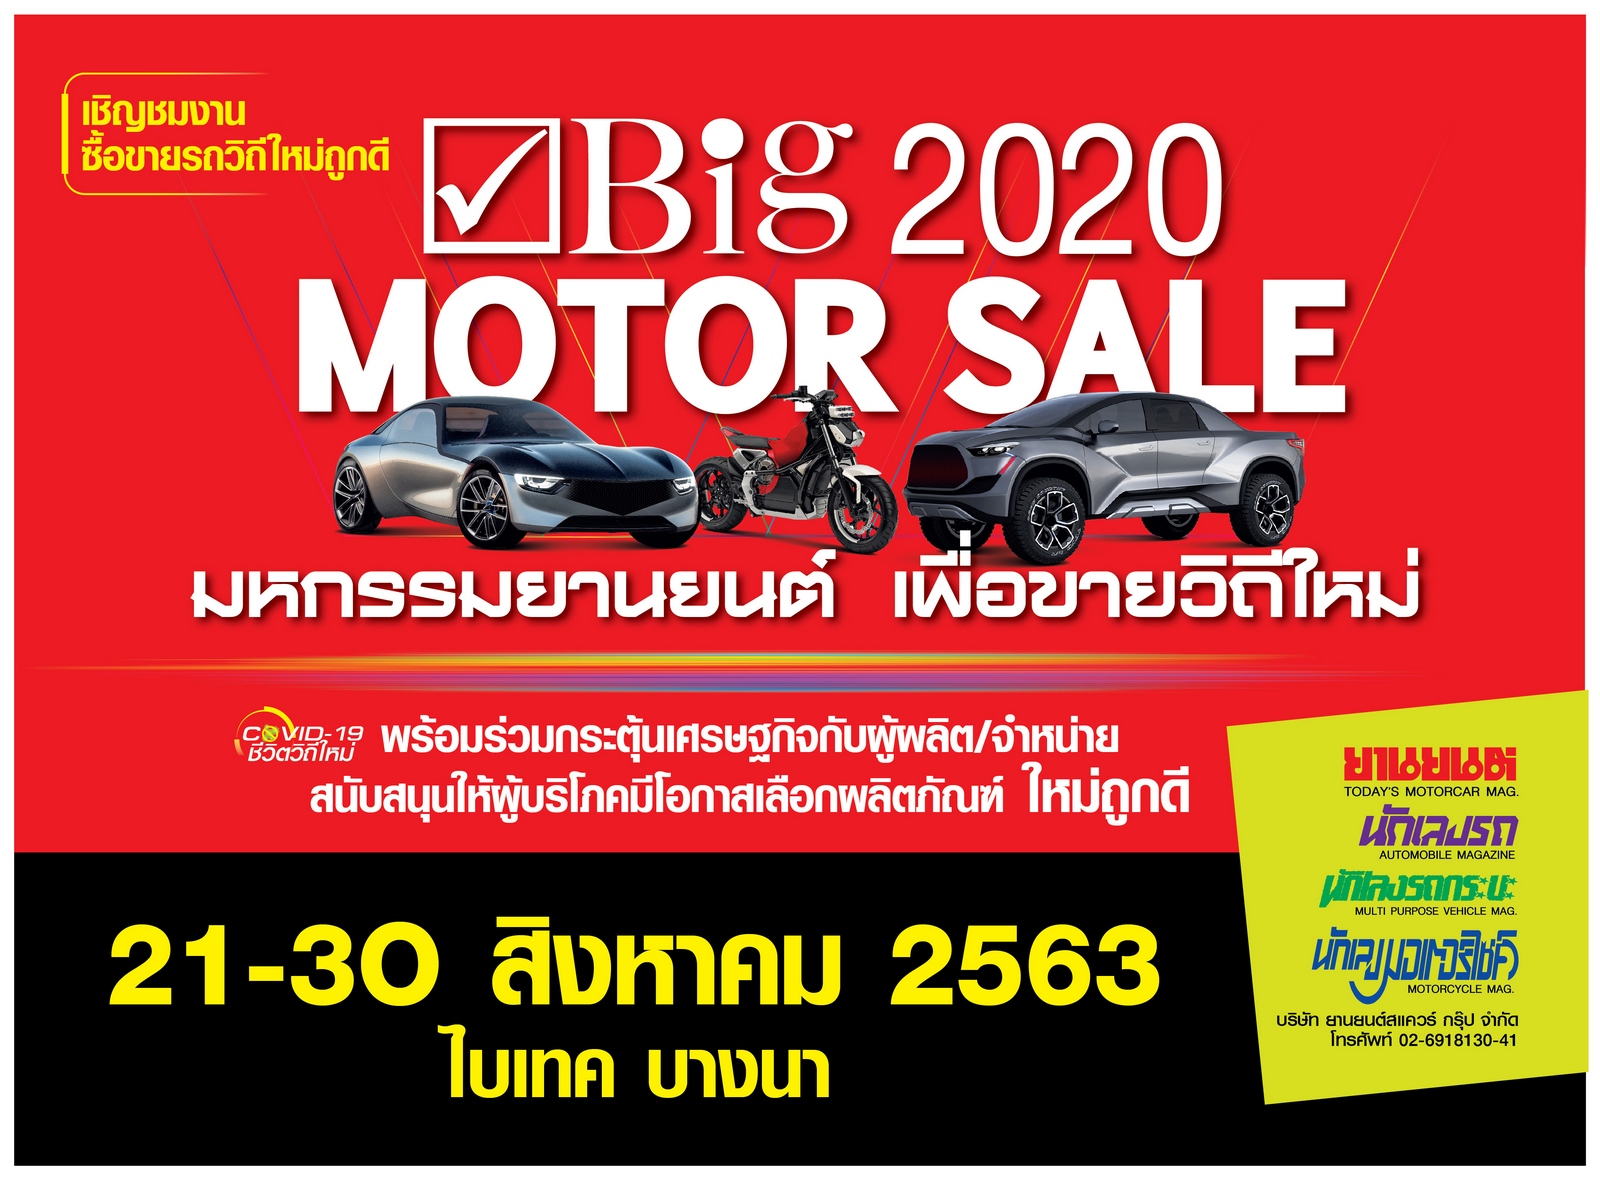 Big Motor Sale 2020 งานขายรถวิถีใหม่ จัดใหญ่กระหึ่มเมืองระดมโปรถูก แคมเปญเด็ด ช่วยขับเคลื่อนเศรษฐกิจไทย 21-30 สิงหาคมนี้ ที่ไบเทค บางนา